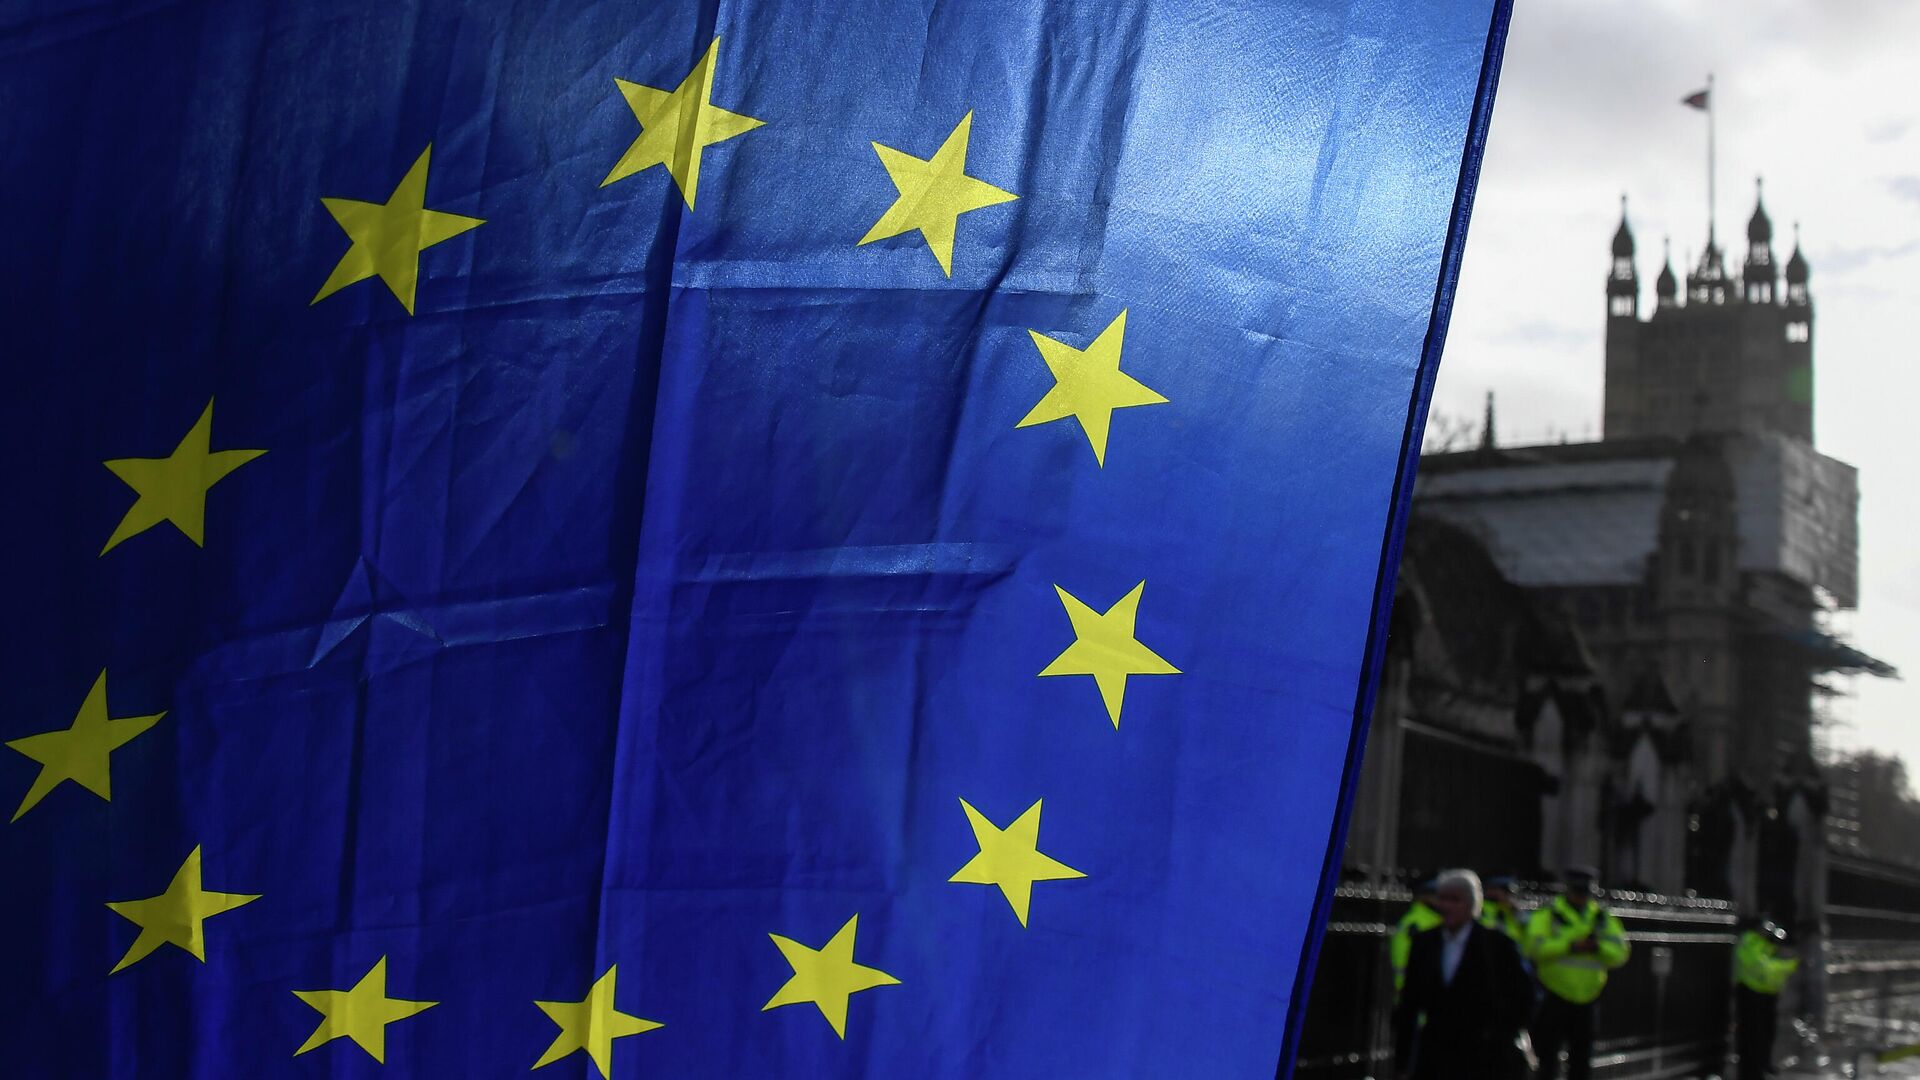 Флаг ЕС в руках демонстранта на фоне башни Виктория у Вестминстерского дворца в Лондоне. 14 декабря 2020 - РИА Новости, 1920, 03.02.2021